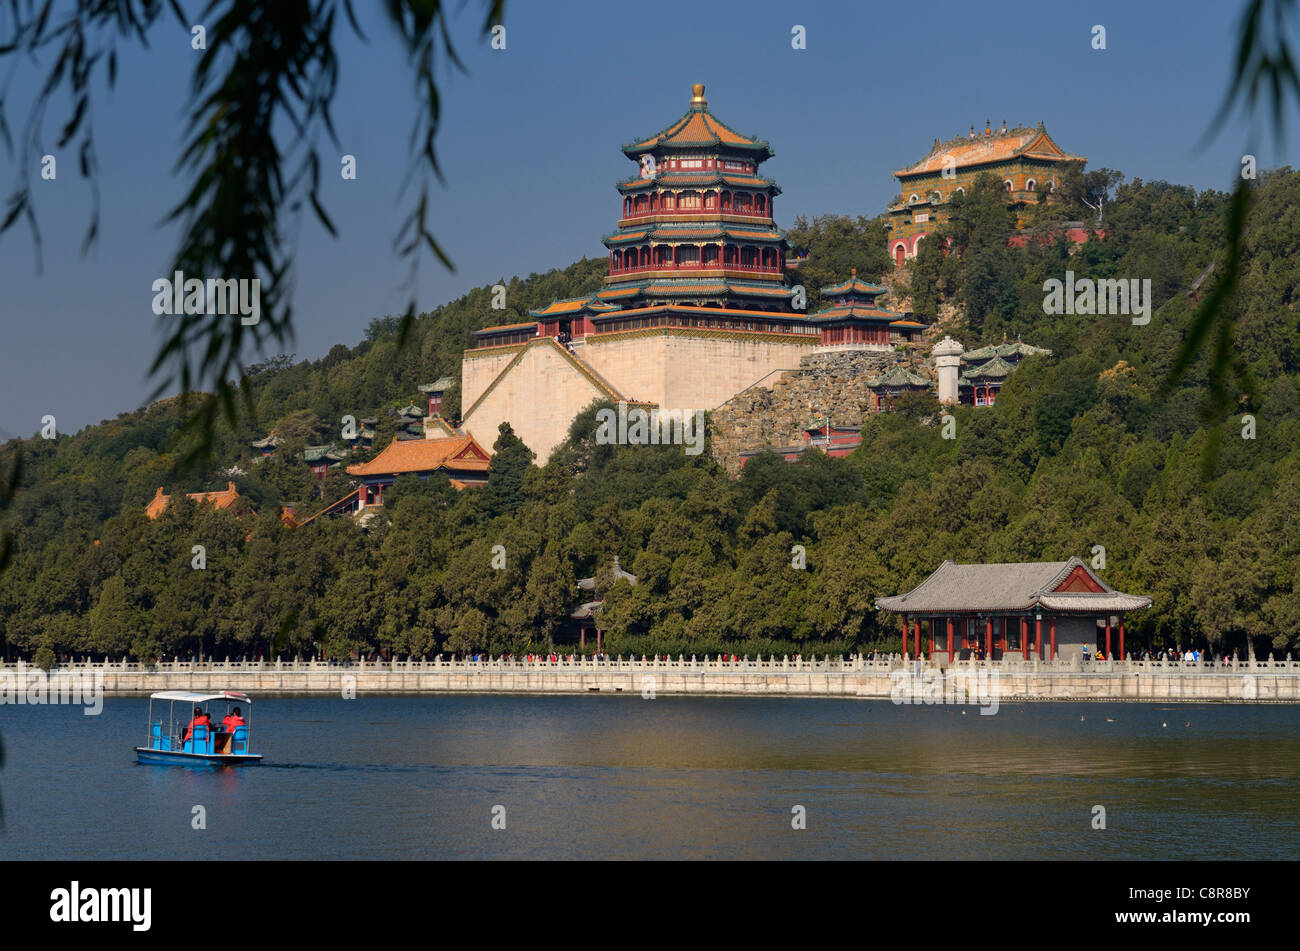 Les plaisanciers de la palette sur le Lac de Kunming avec parfum bouddhiste et la mer de la sagesse des temples à Summer Palace Beijing Chine Banque D'Images